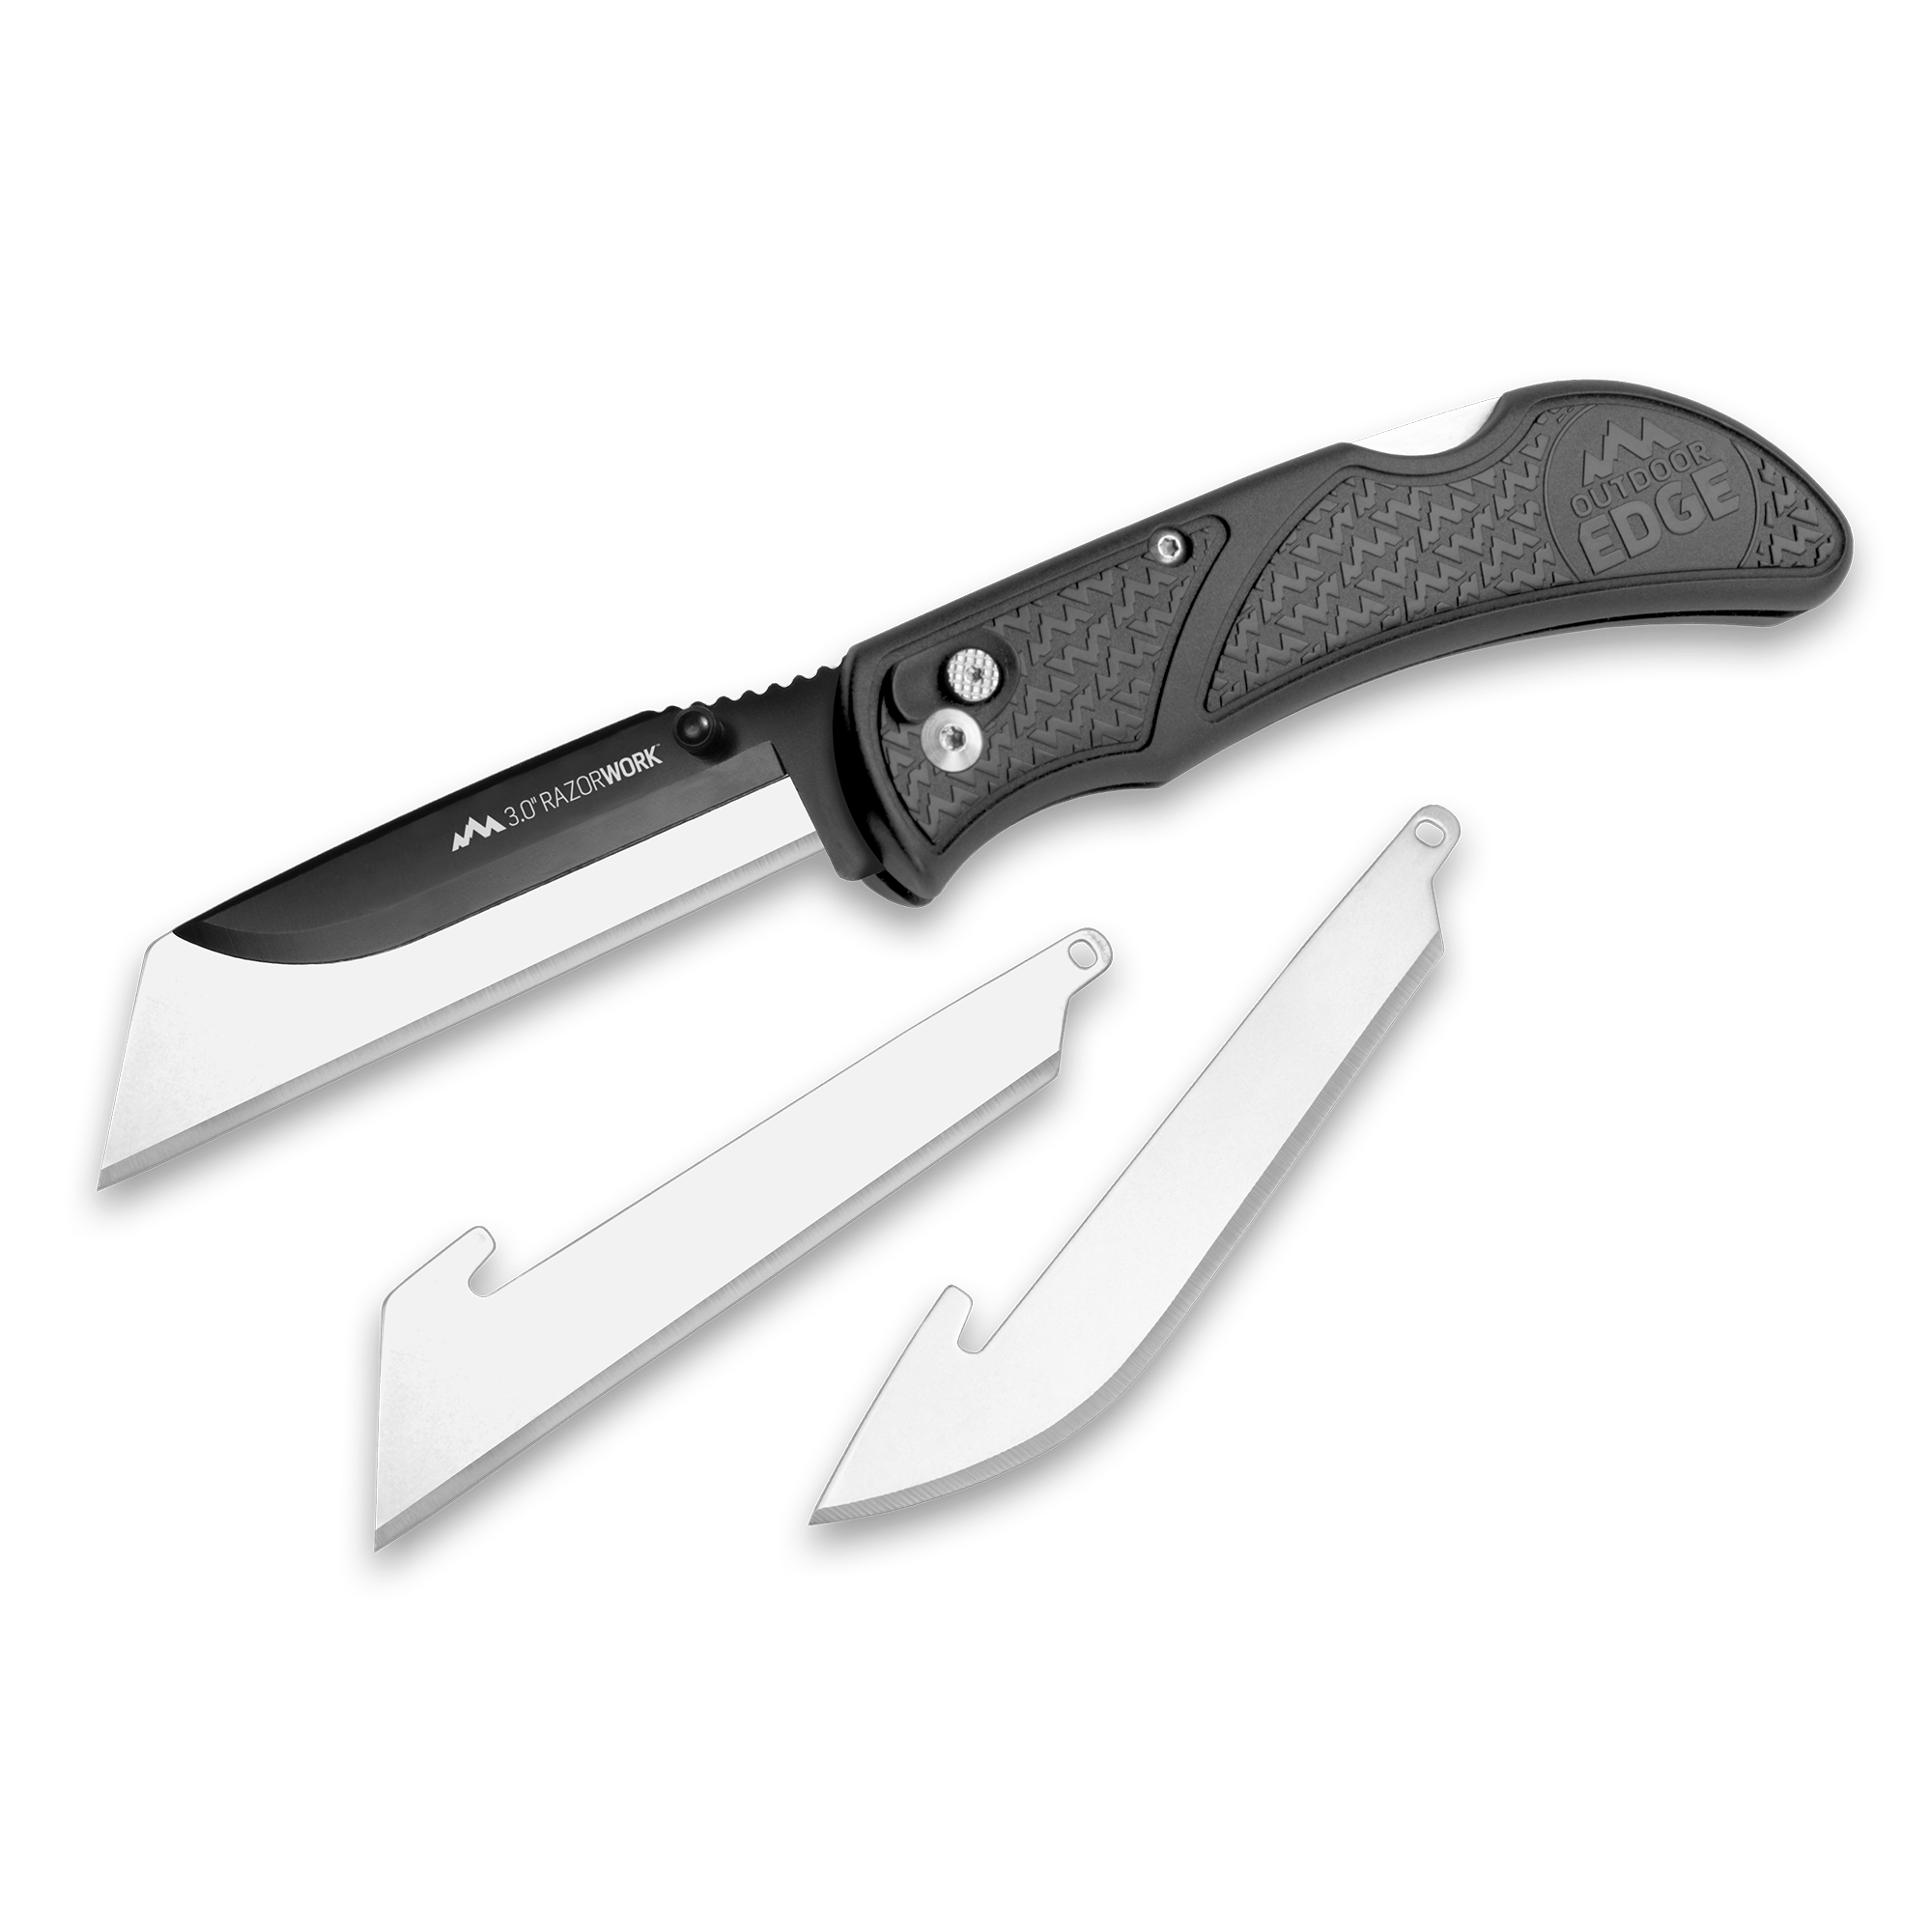 Razor Knife - Bedrock Contractor Supplies & Rentals